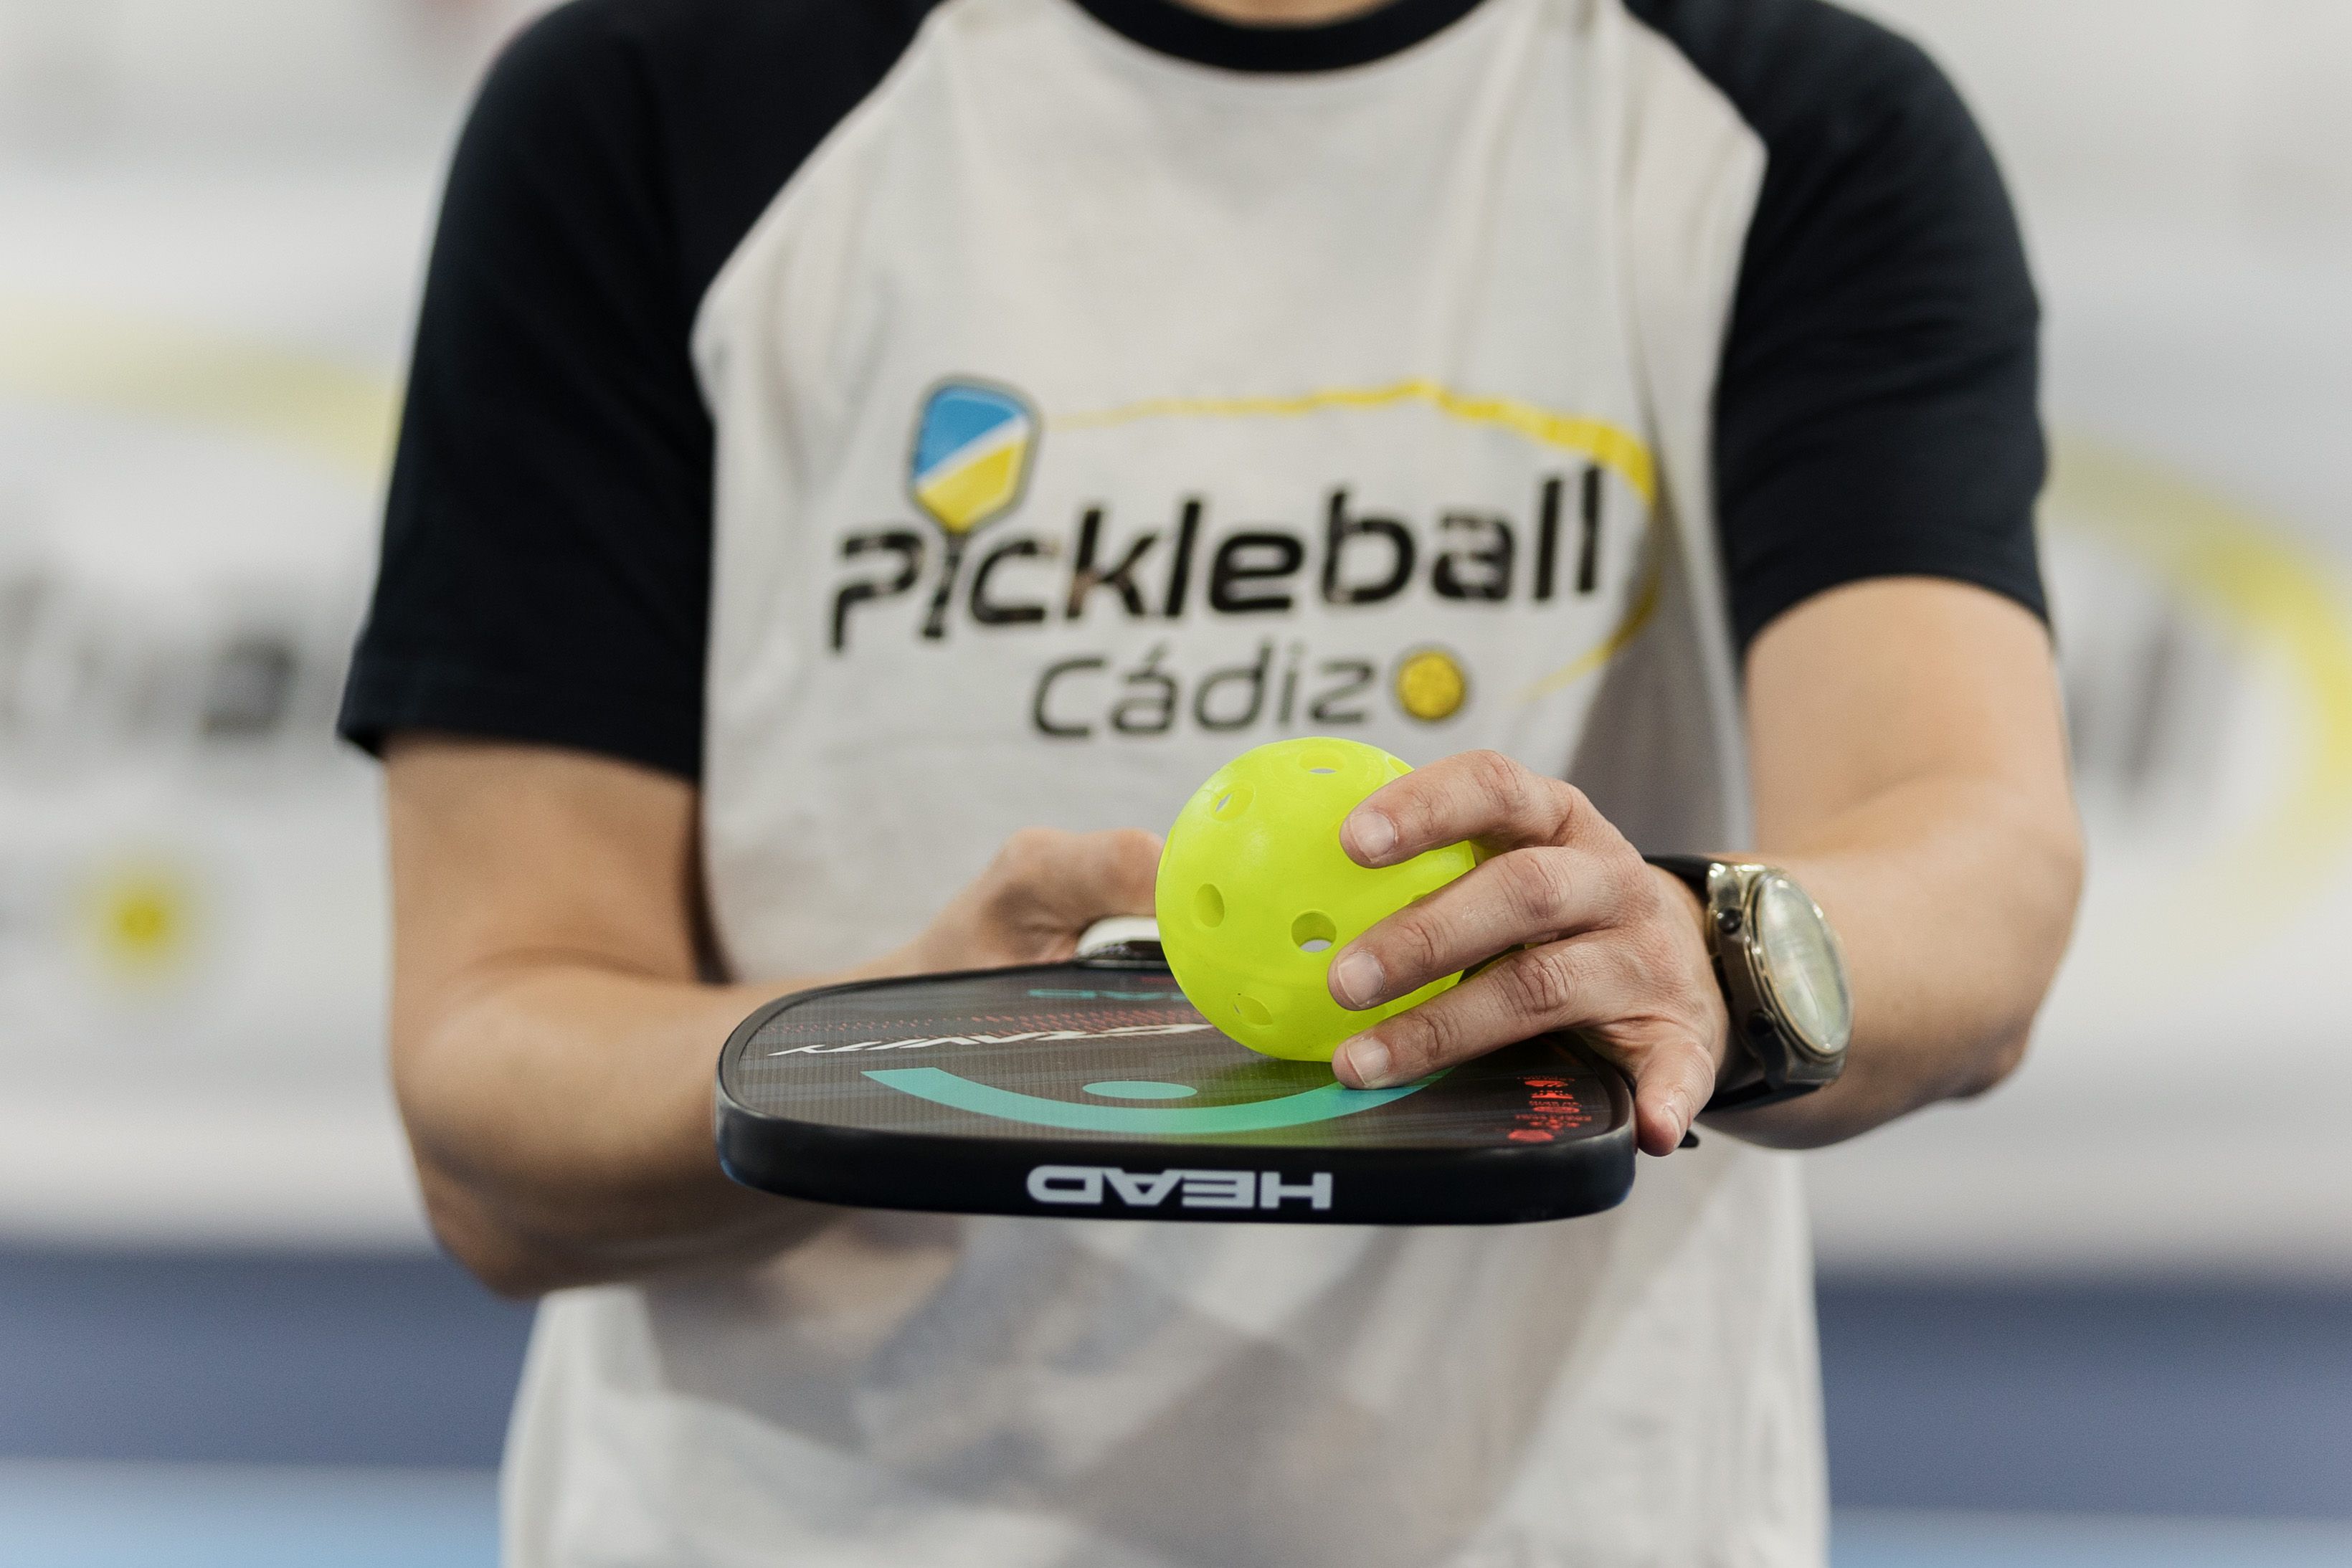 Pala y bola necesarias para jugar al 'pickleball'.